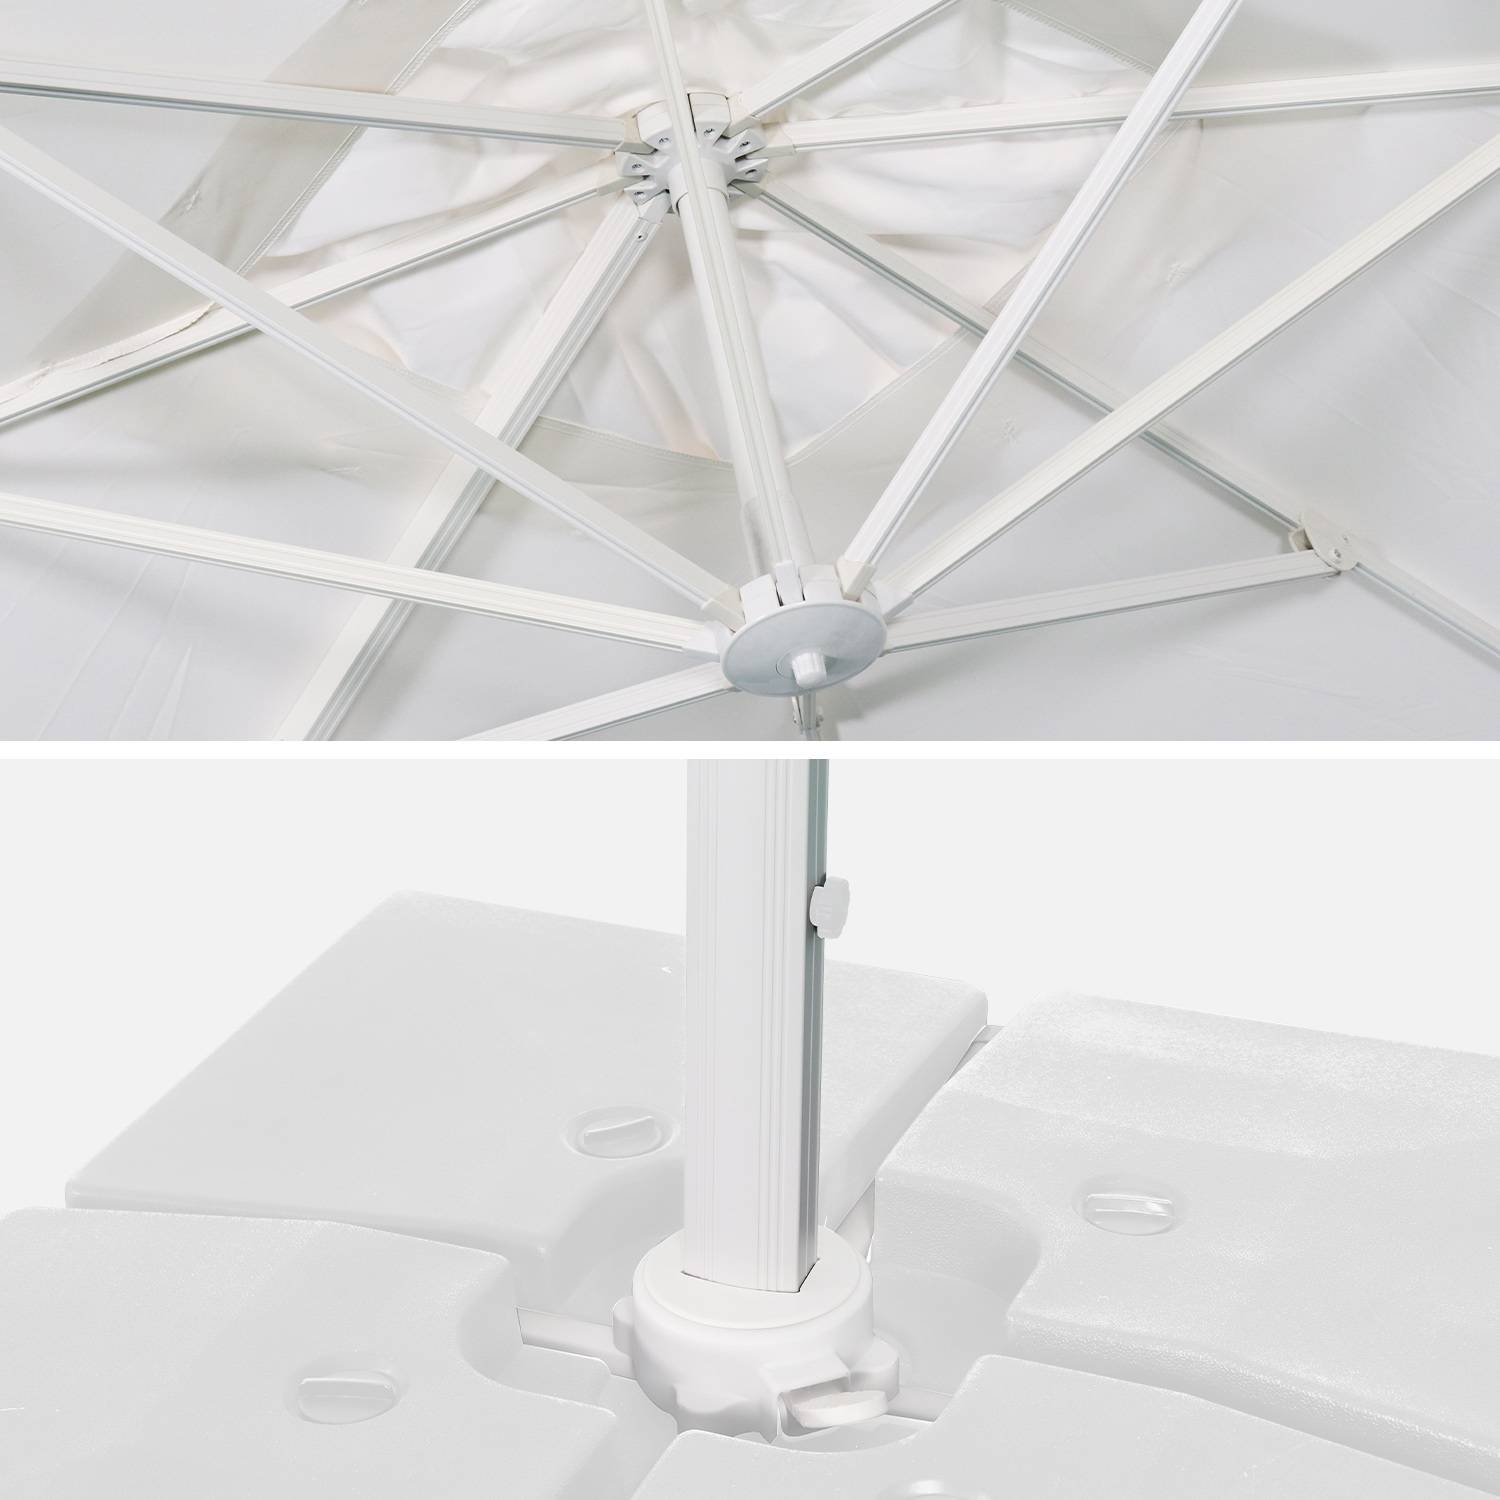 Hoogwaardige 3 x 3m vierkante parasol- Falgos - Wit - Kantelbare, opvouwbare en 360° draaibare zweefparasol Photo9